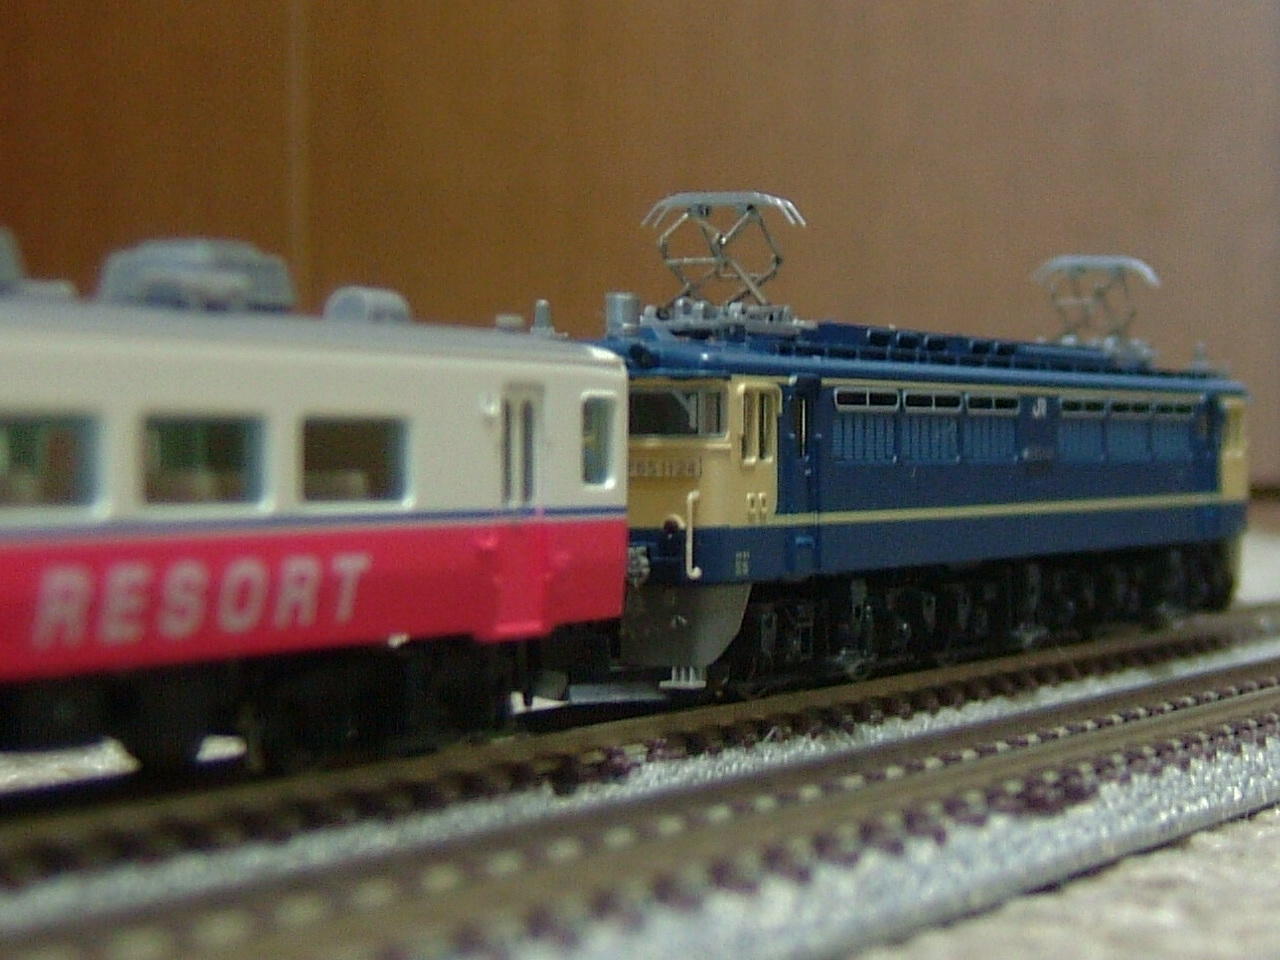 14系JT+リゾート白馬'88と新製品の話題: Mr.Tetsuoの鉄道と芸能界系の 